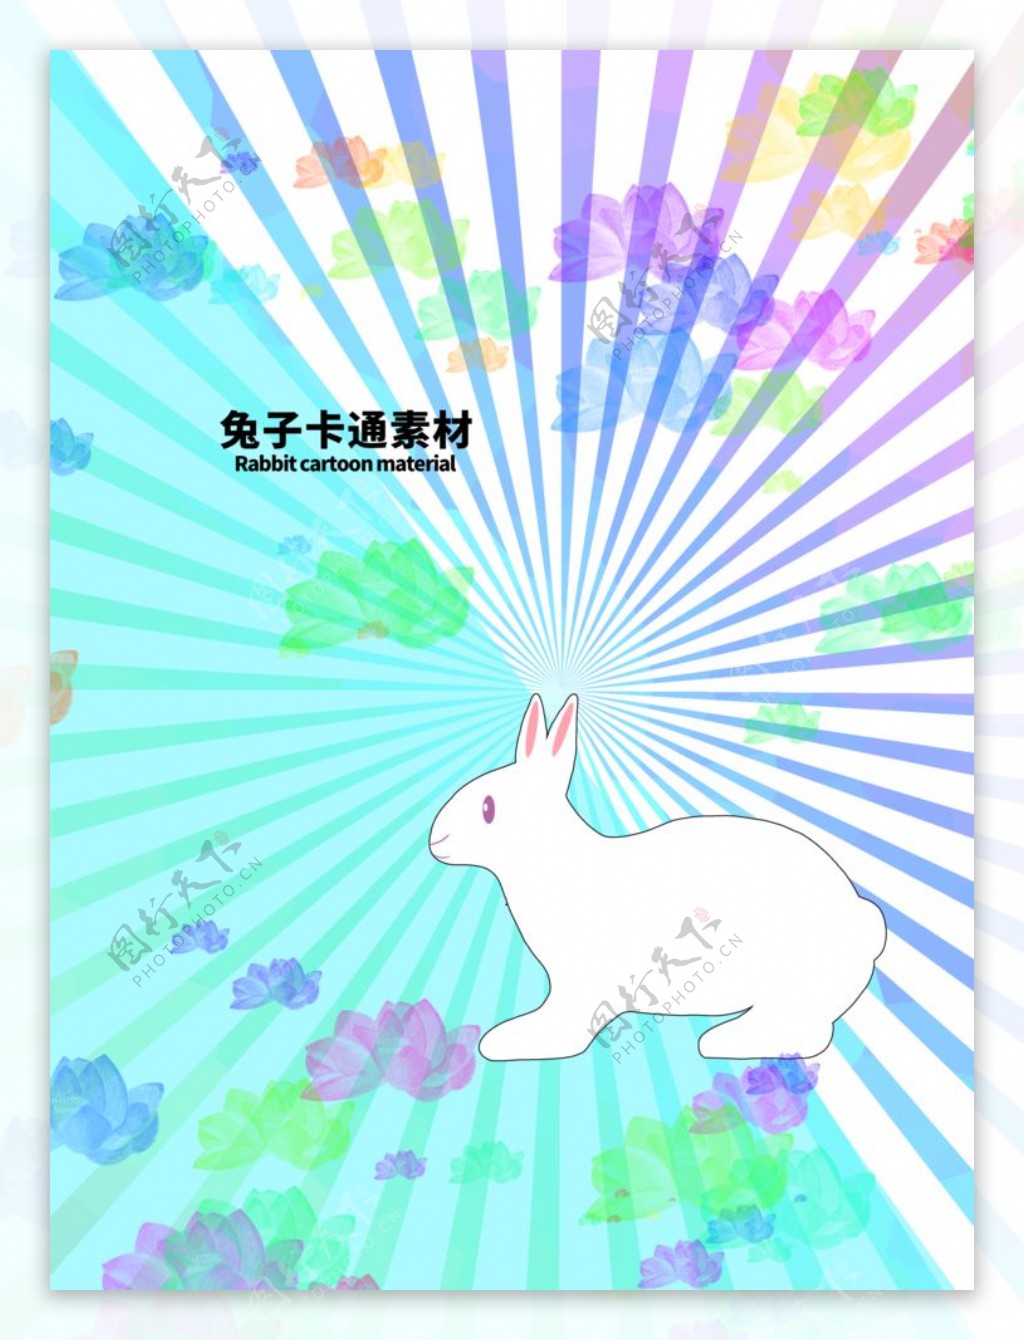 分层炫彩放射对角兔子卡通图片